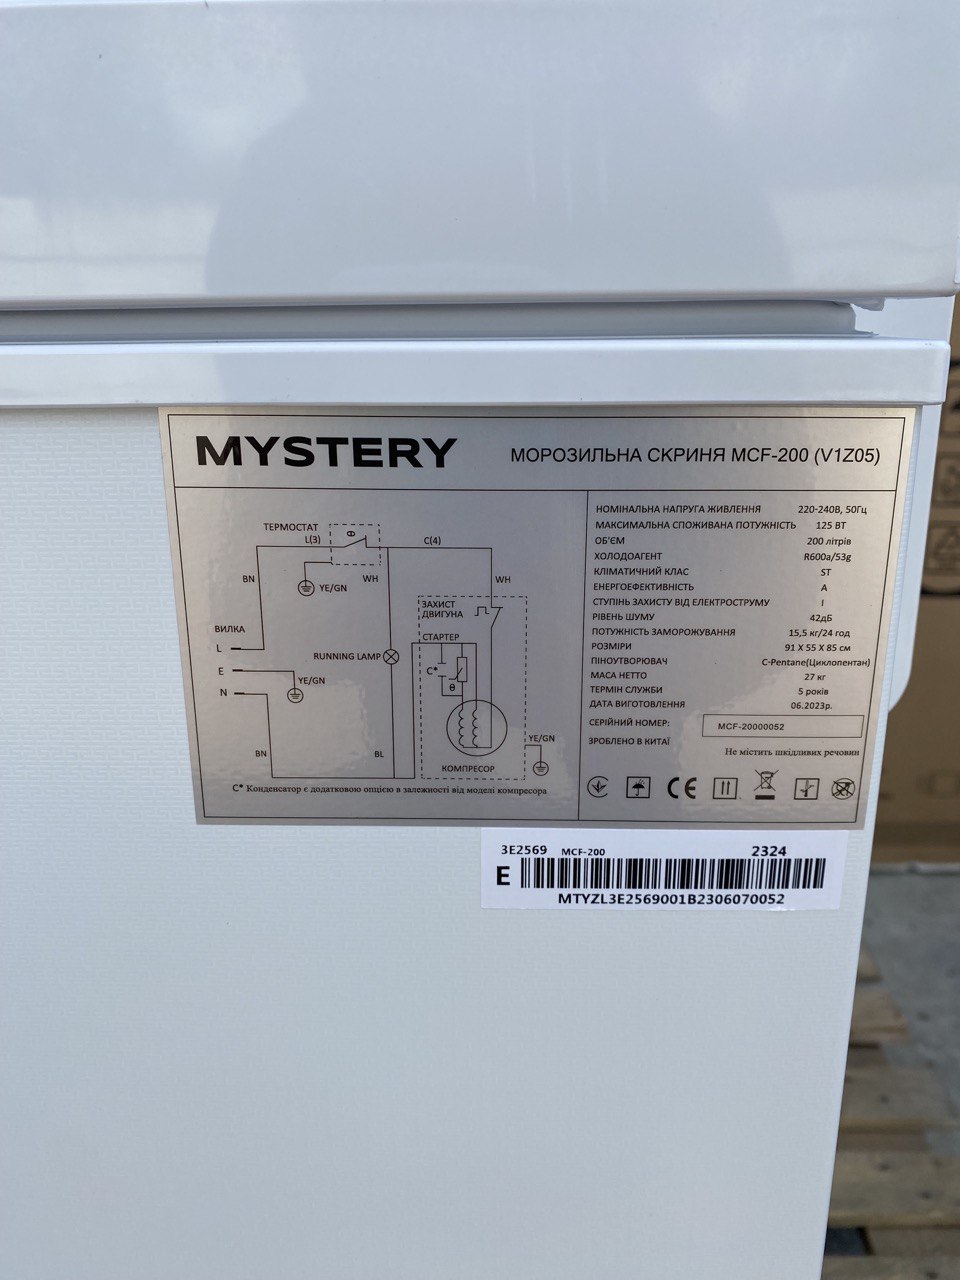 Freezer Mystery MCF-200